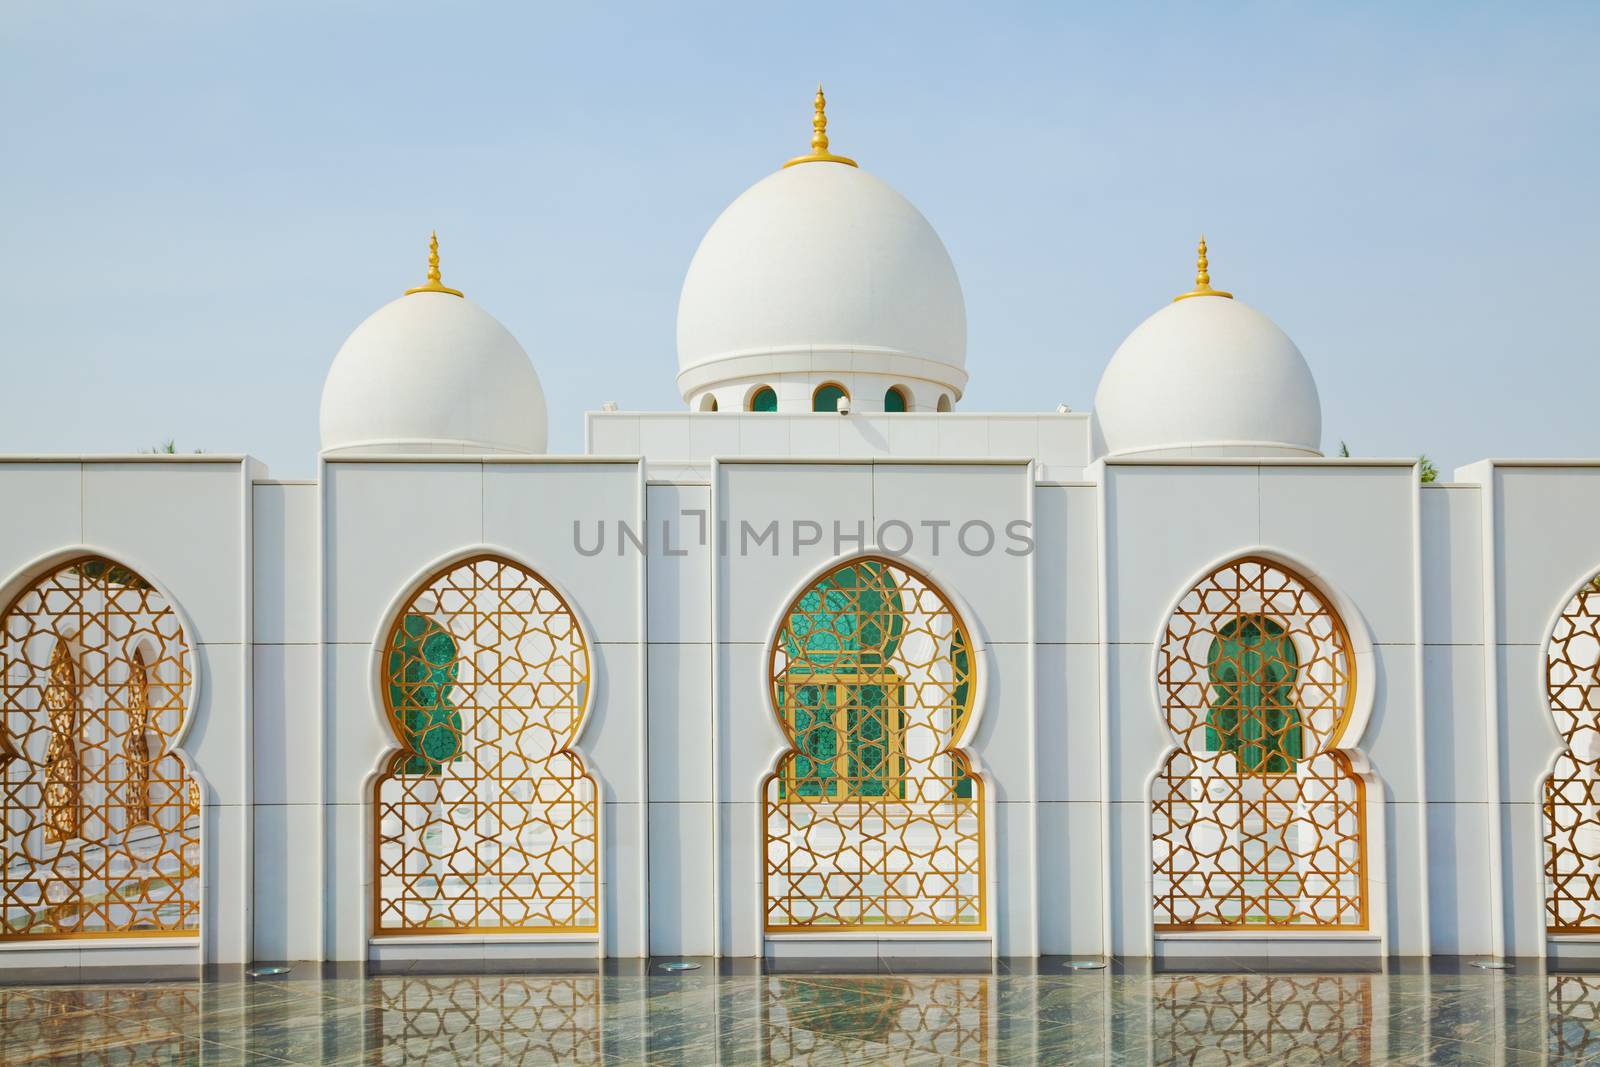 Grand Mosque in Abu Dhabi, United Arab Emirates by oleandra